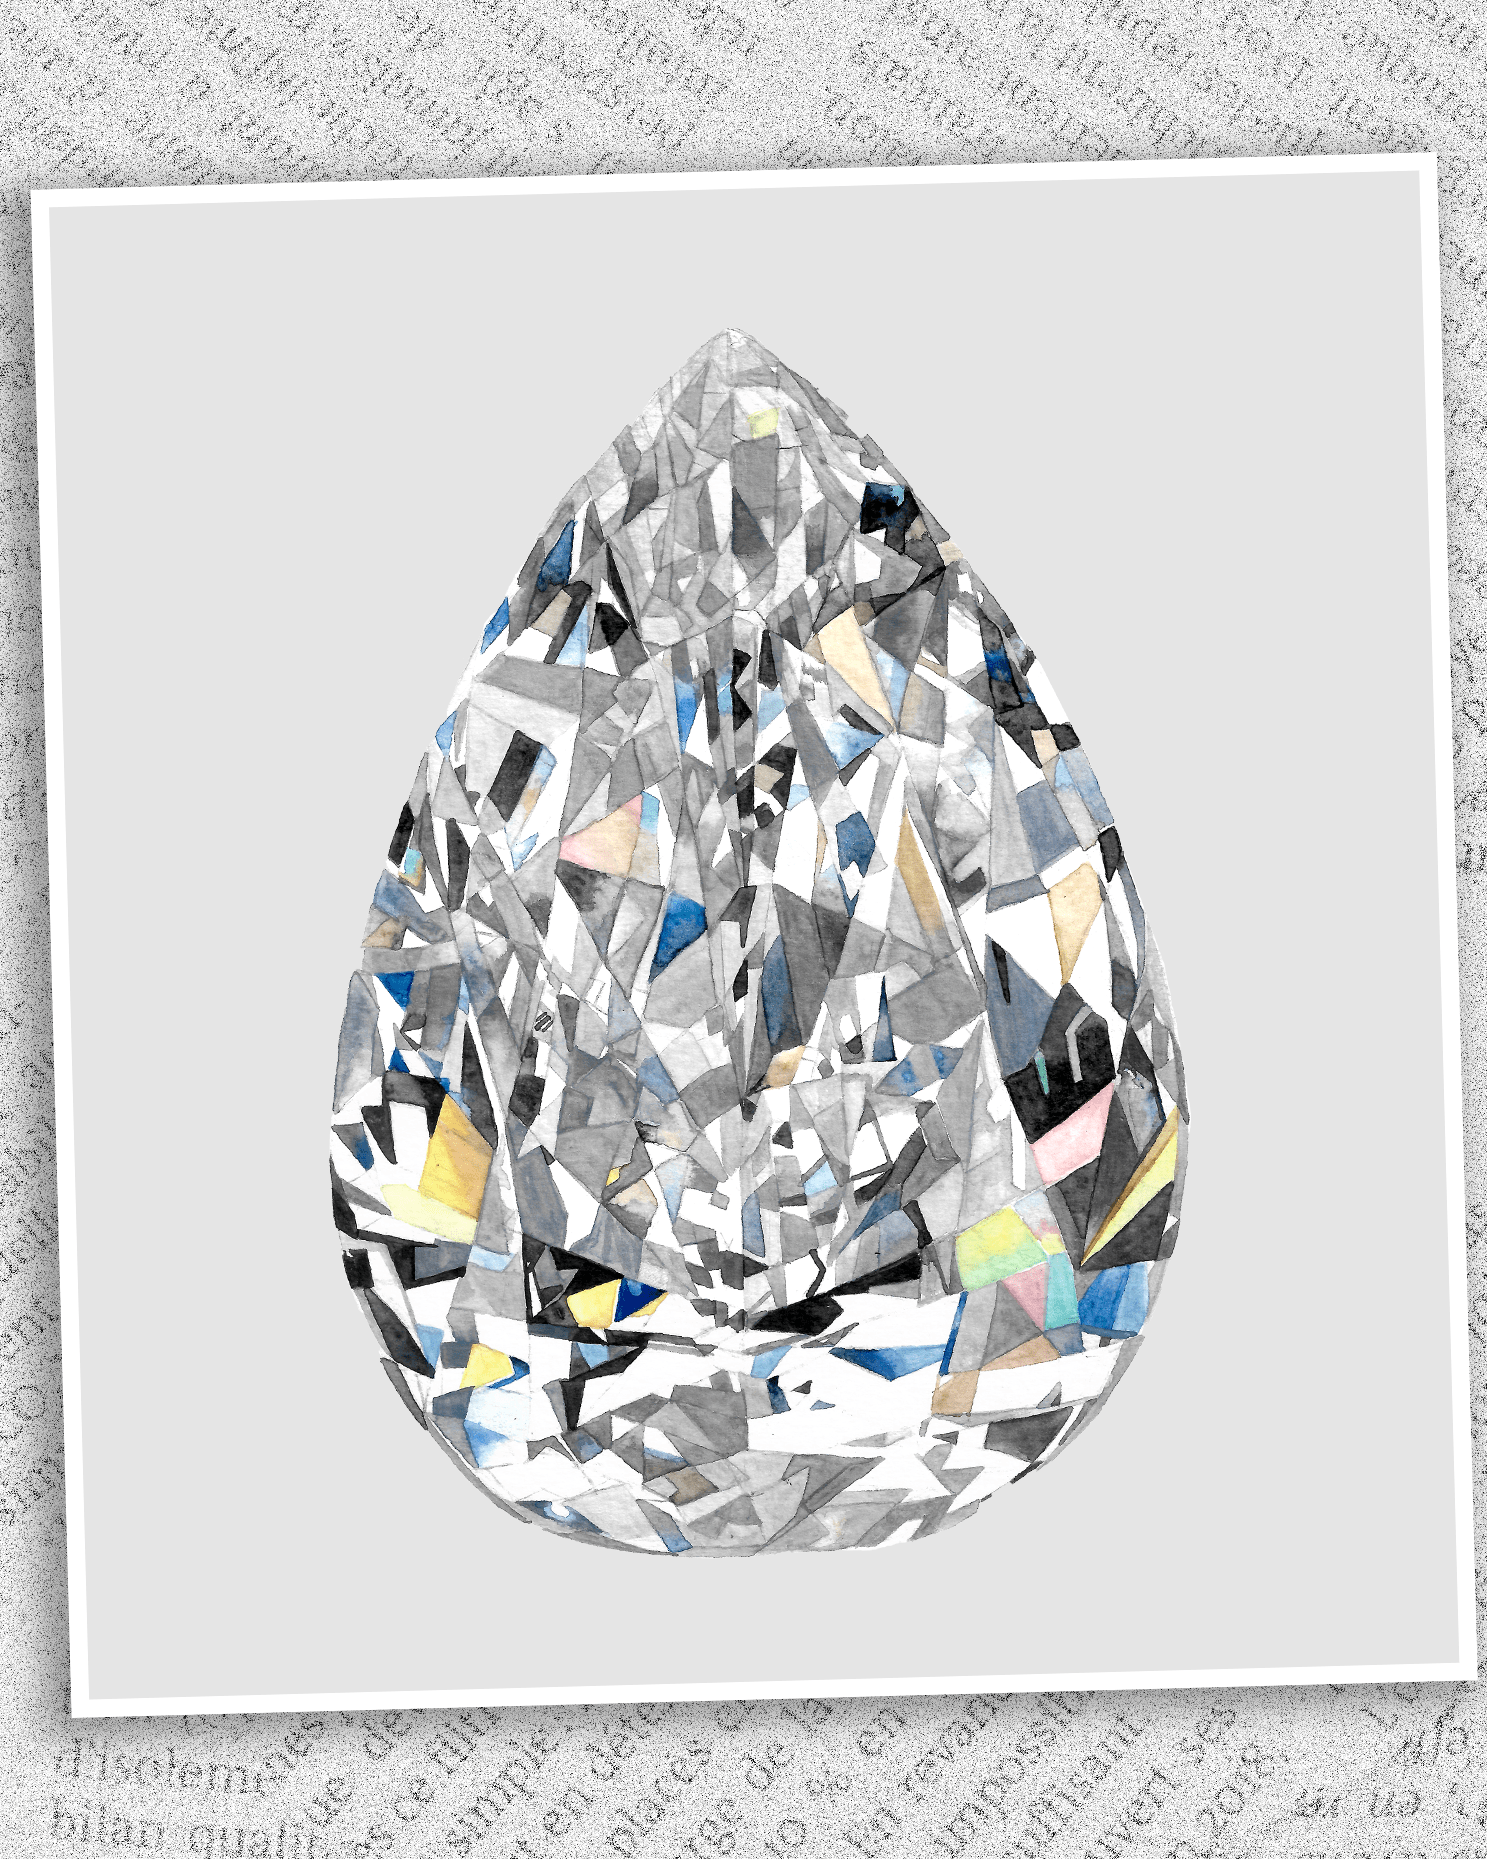  Illustration of De Beers Millennial Diamond